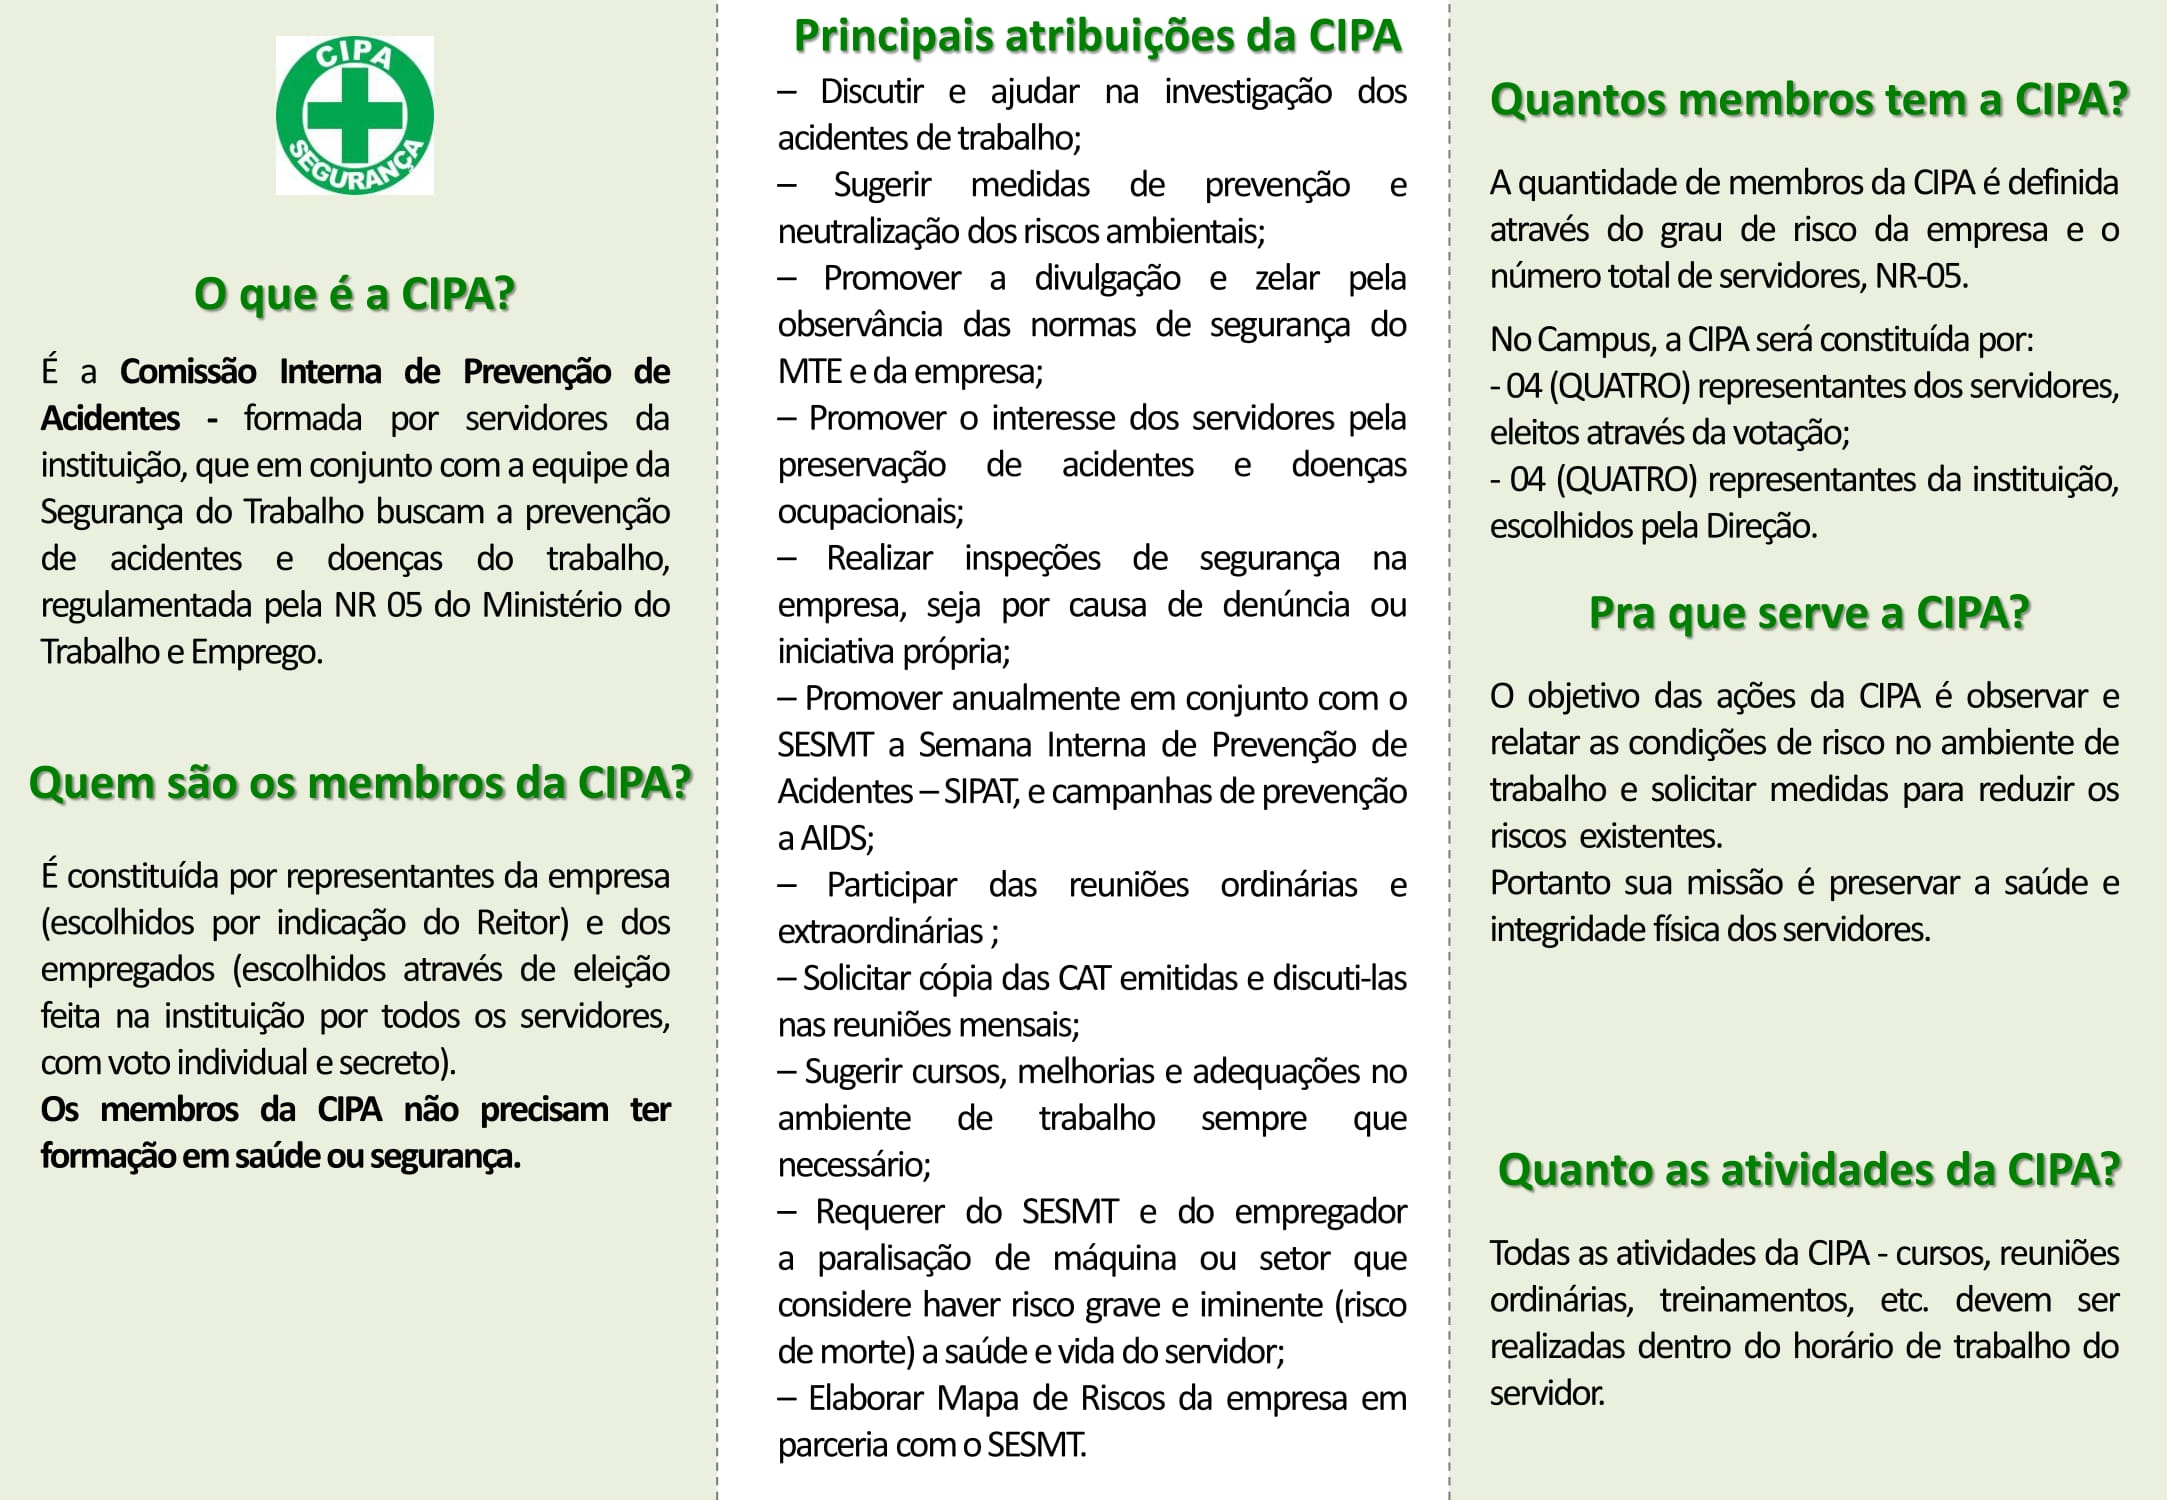 Cartilha_sobre_CIPA_-_Rondon_1-1.jpg